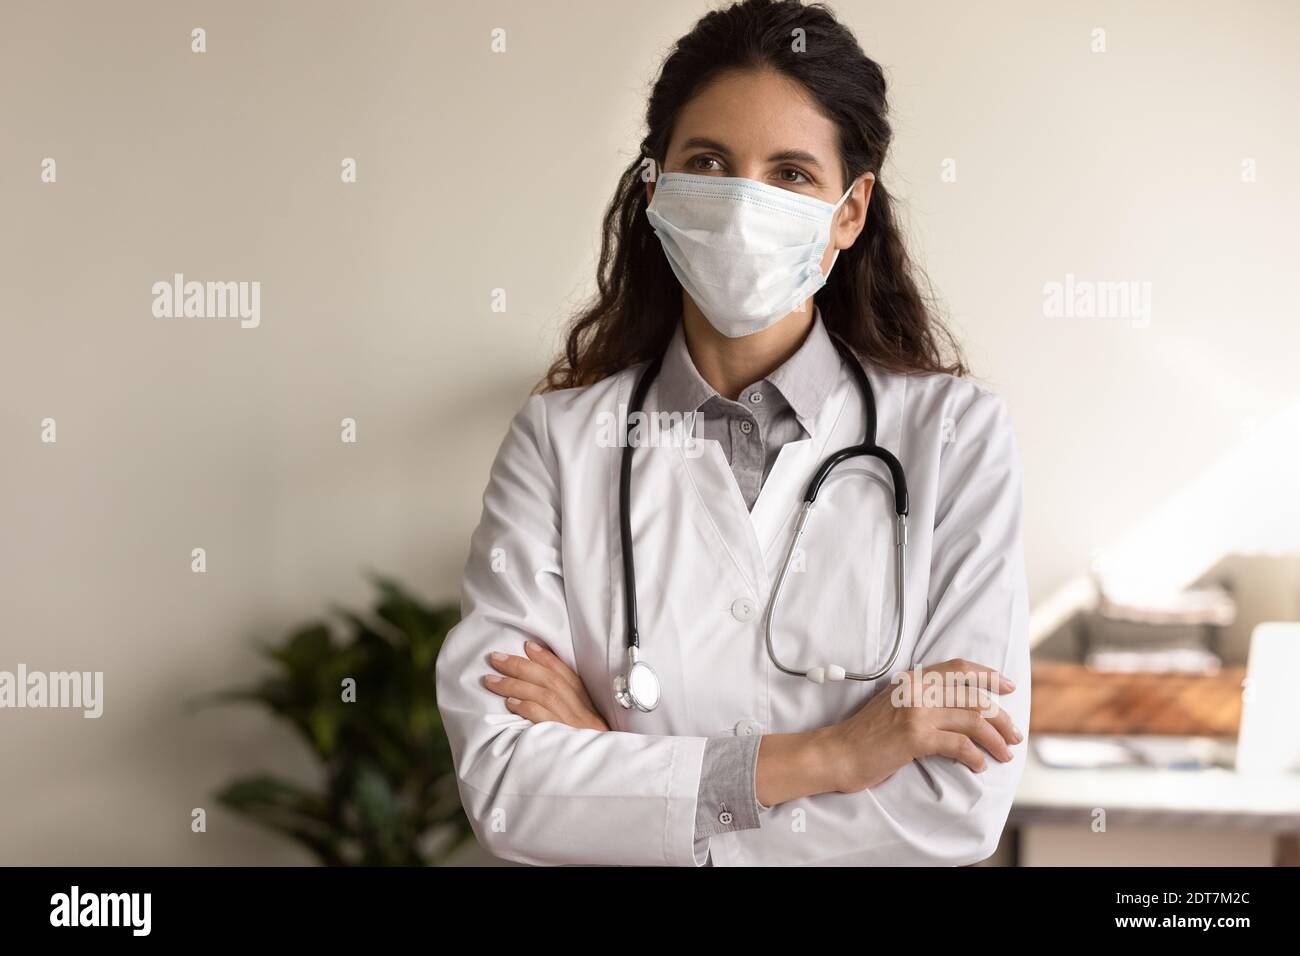 Medico femminile in maschera di viso lavoro in ospedale durante covid-19 Foto Stock